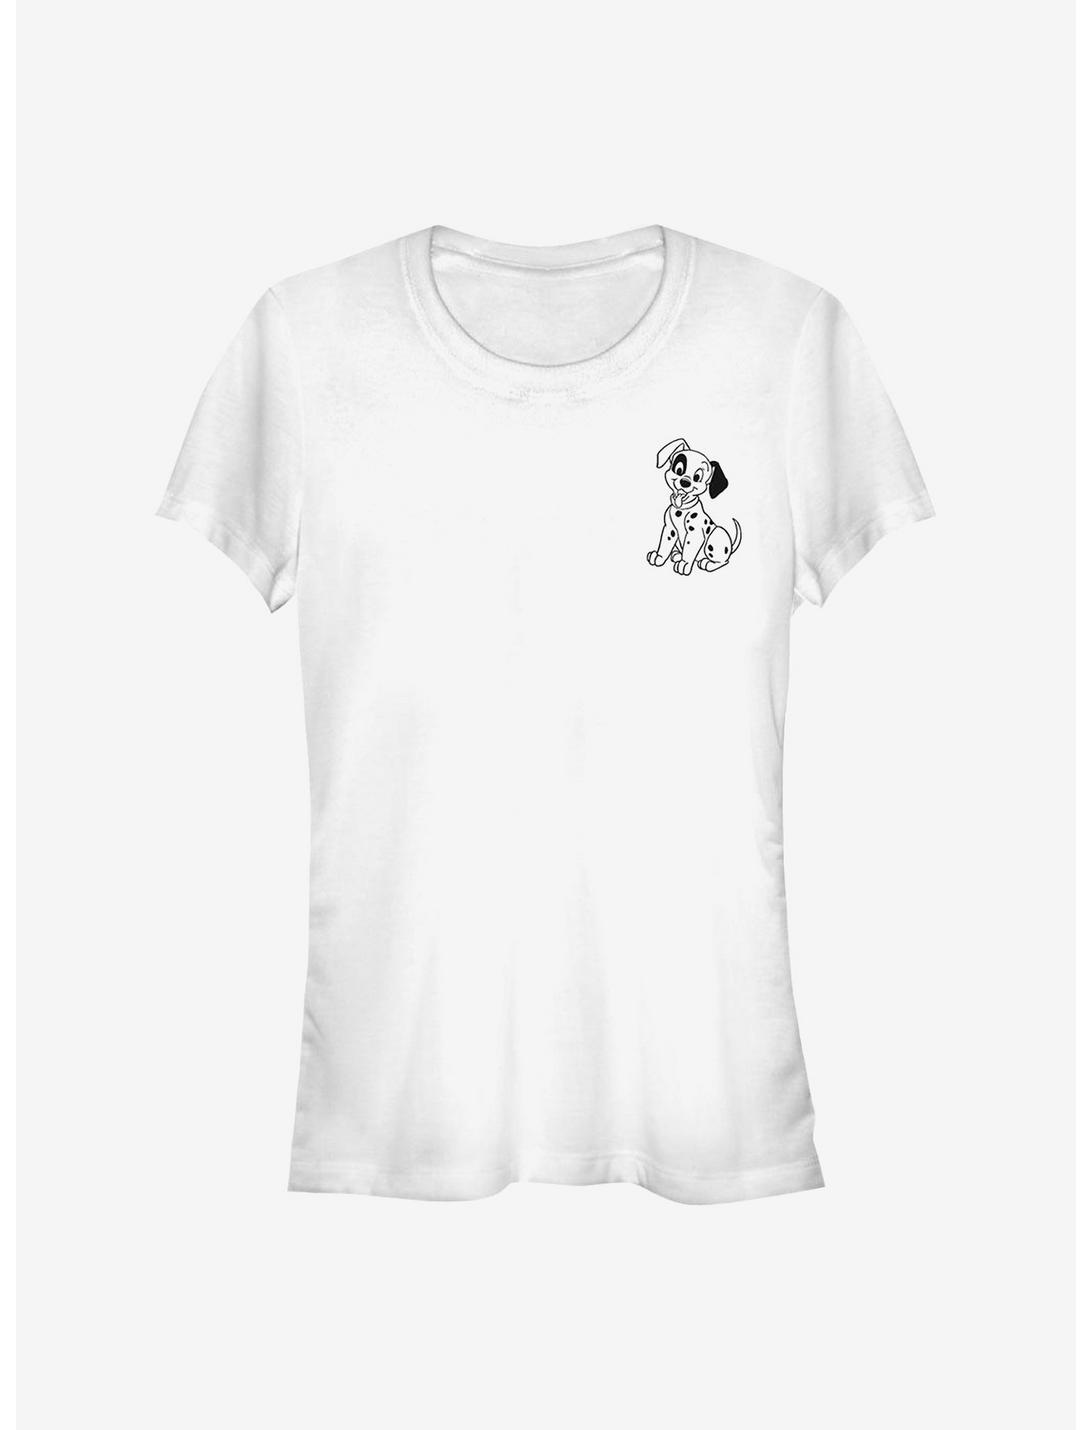 Disney 101 Dalmatians Patch Line Girls T-Shirt, WHITE, hi-res